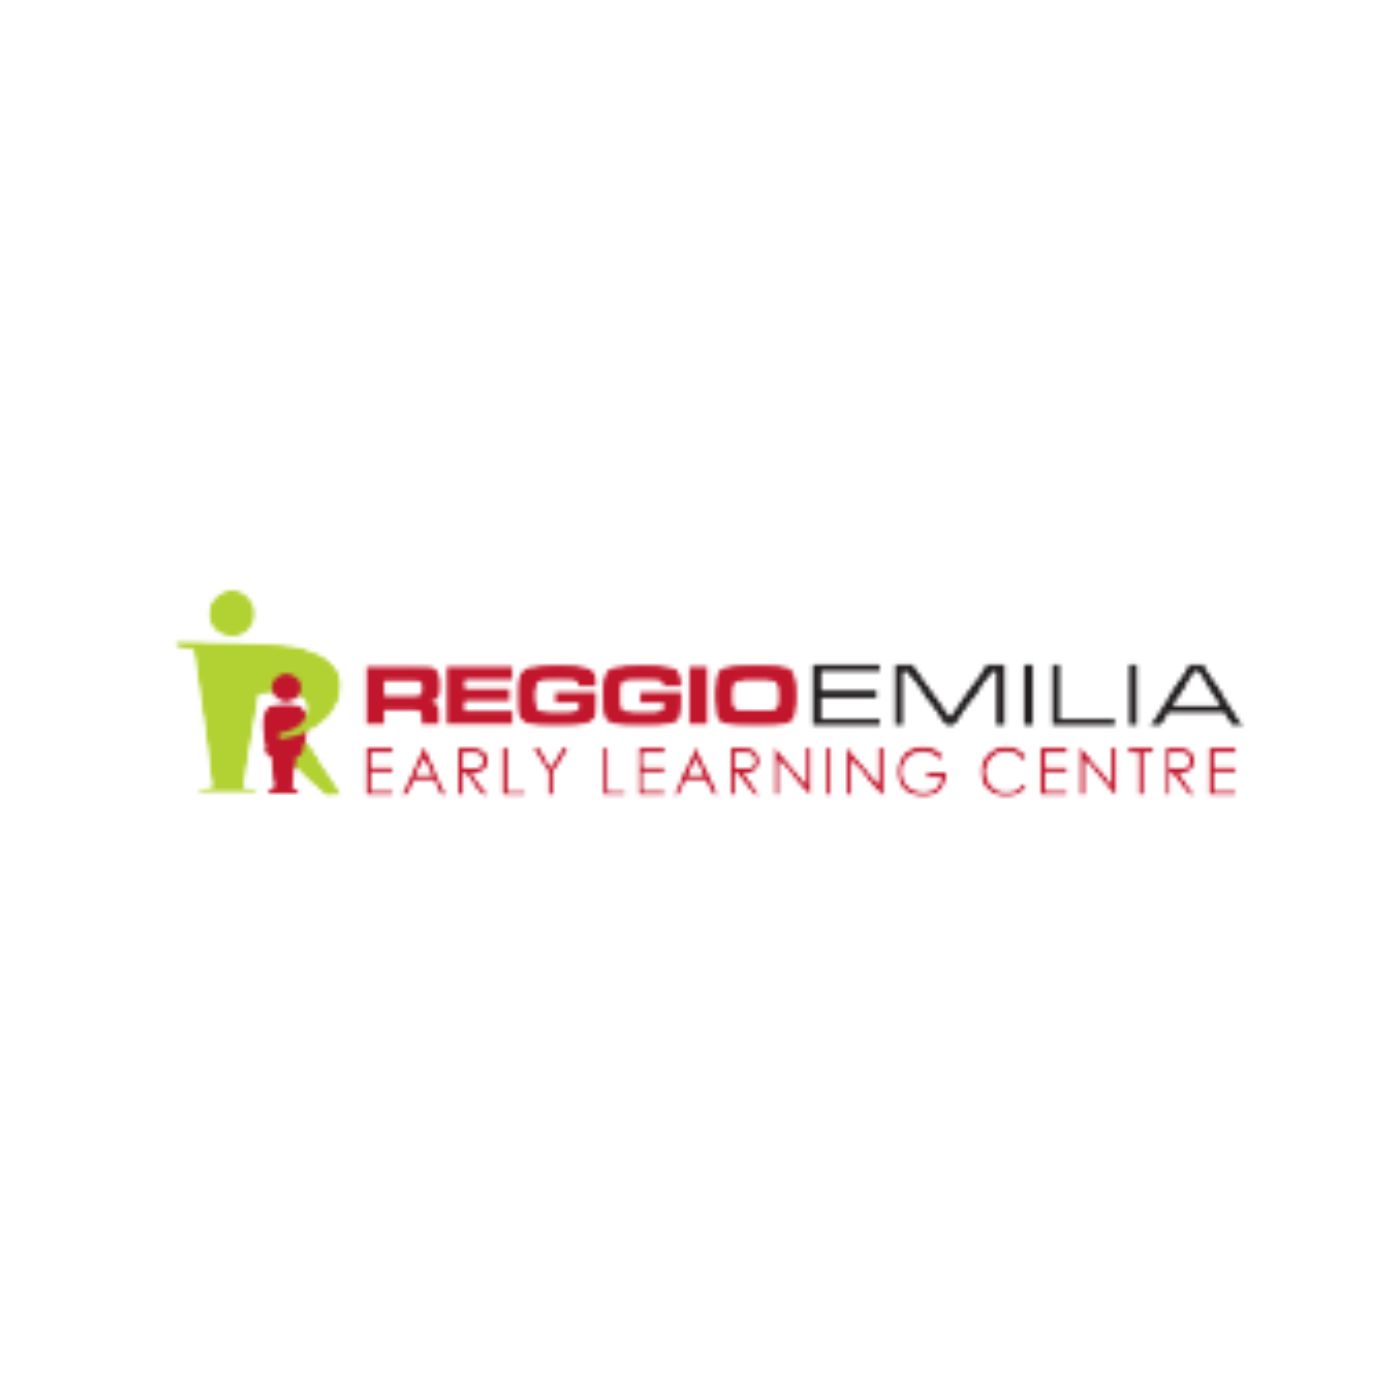 Reggio Emilia Early Learning Centre